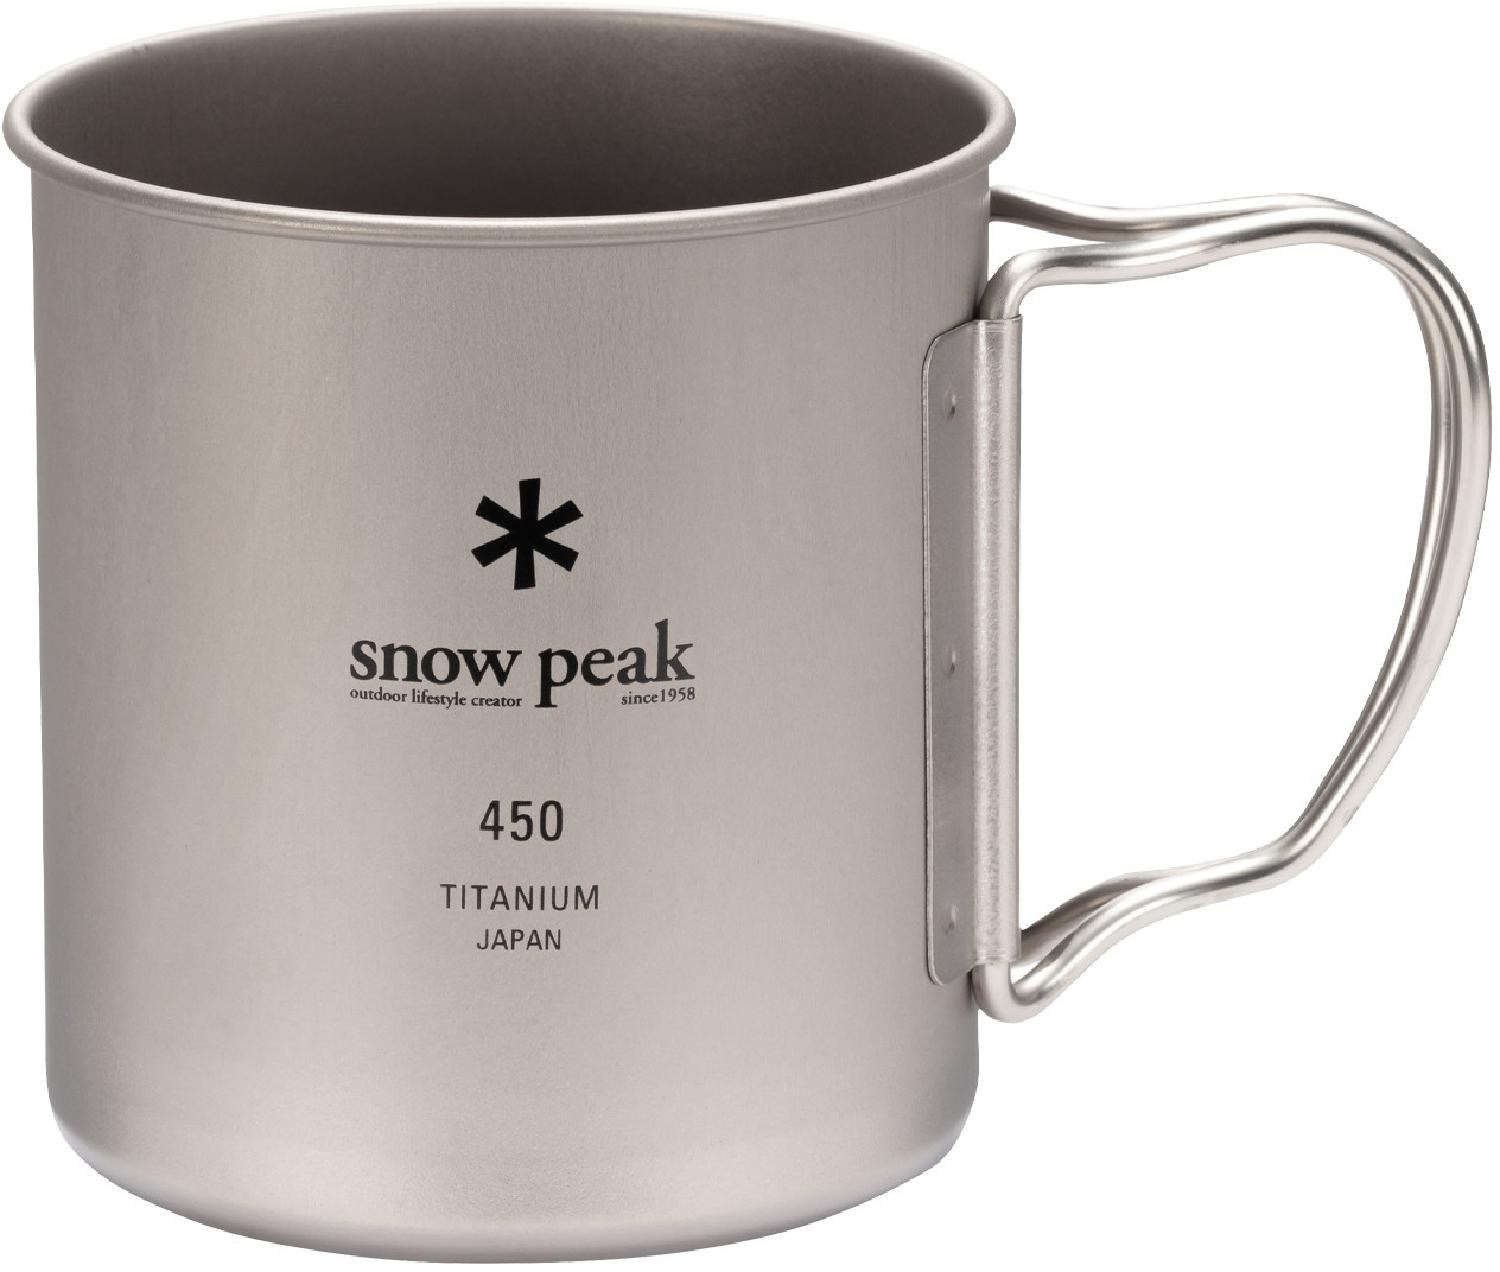 Титановая одинарная чашка 450 Snow Peak